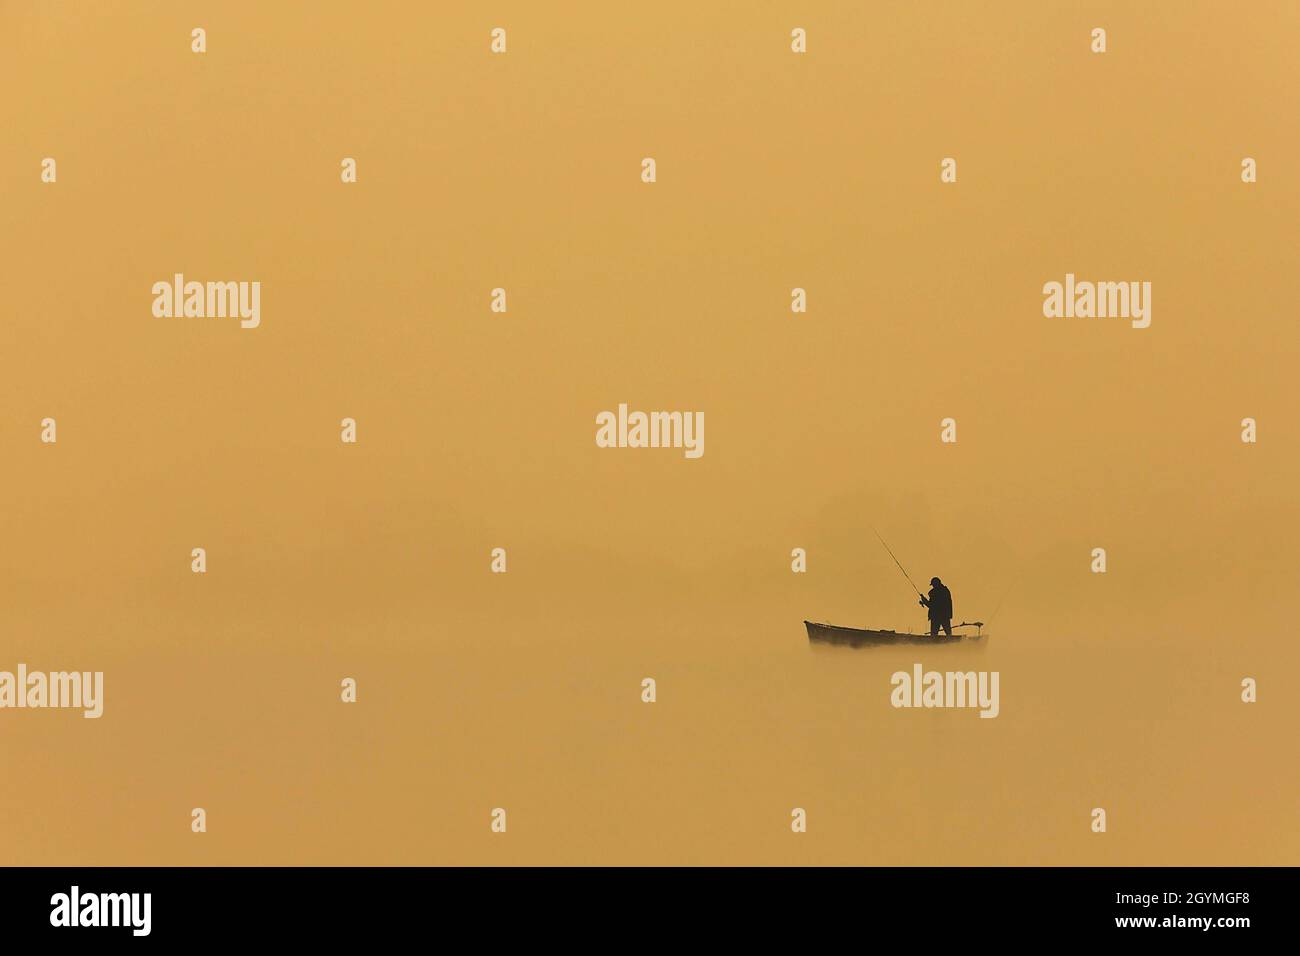 silhouette d'un homme pêchant depuis le bateau au coucher du soleil, belles couleurs orange Banque D'Images